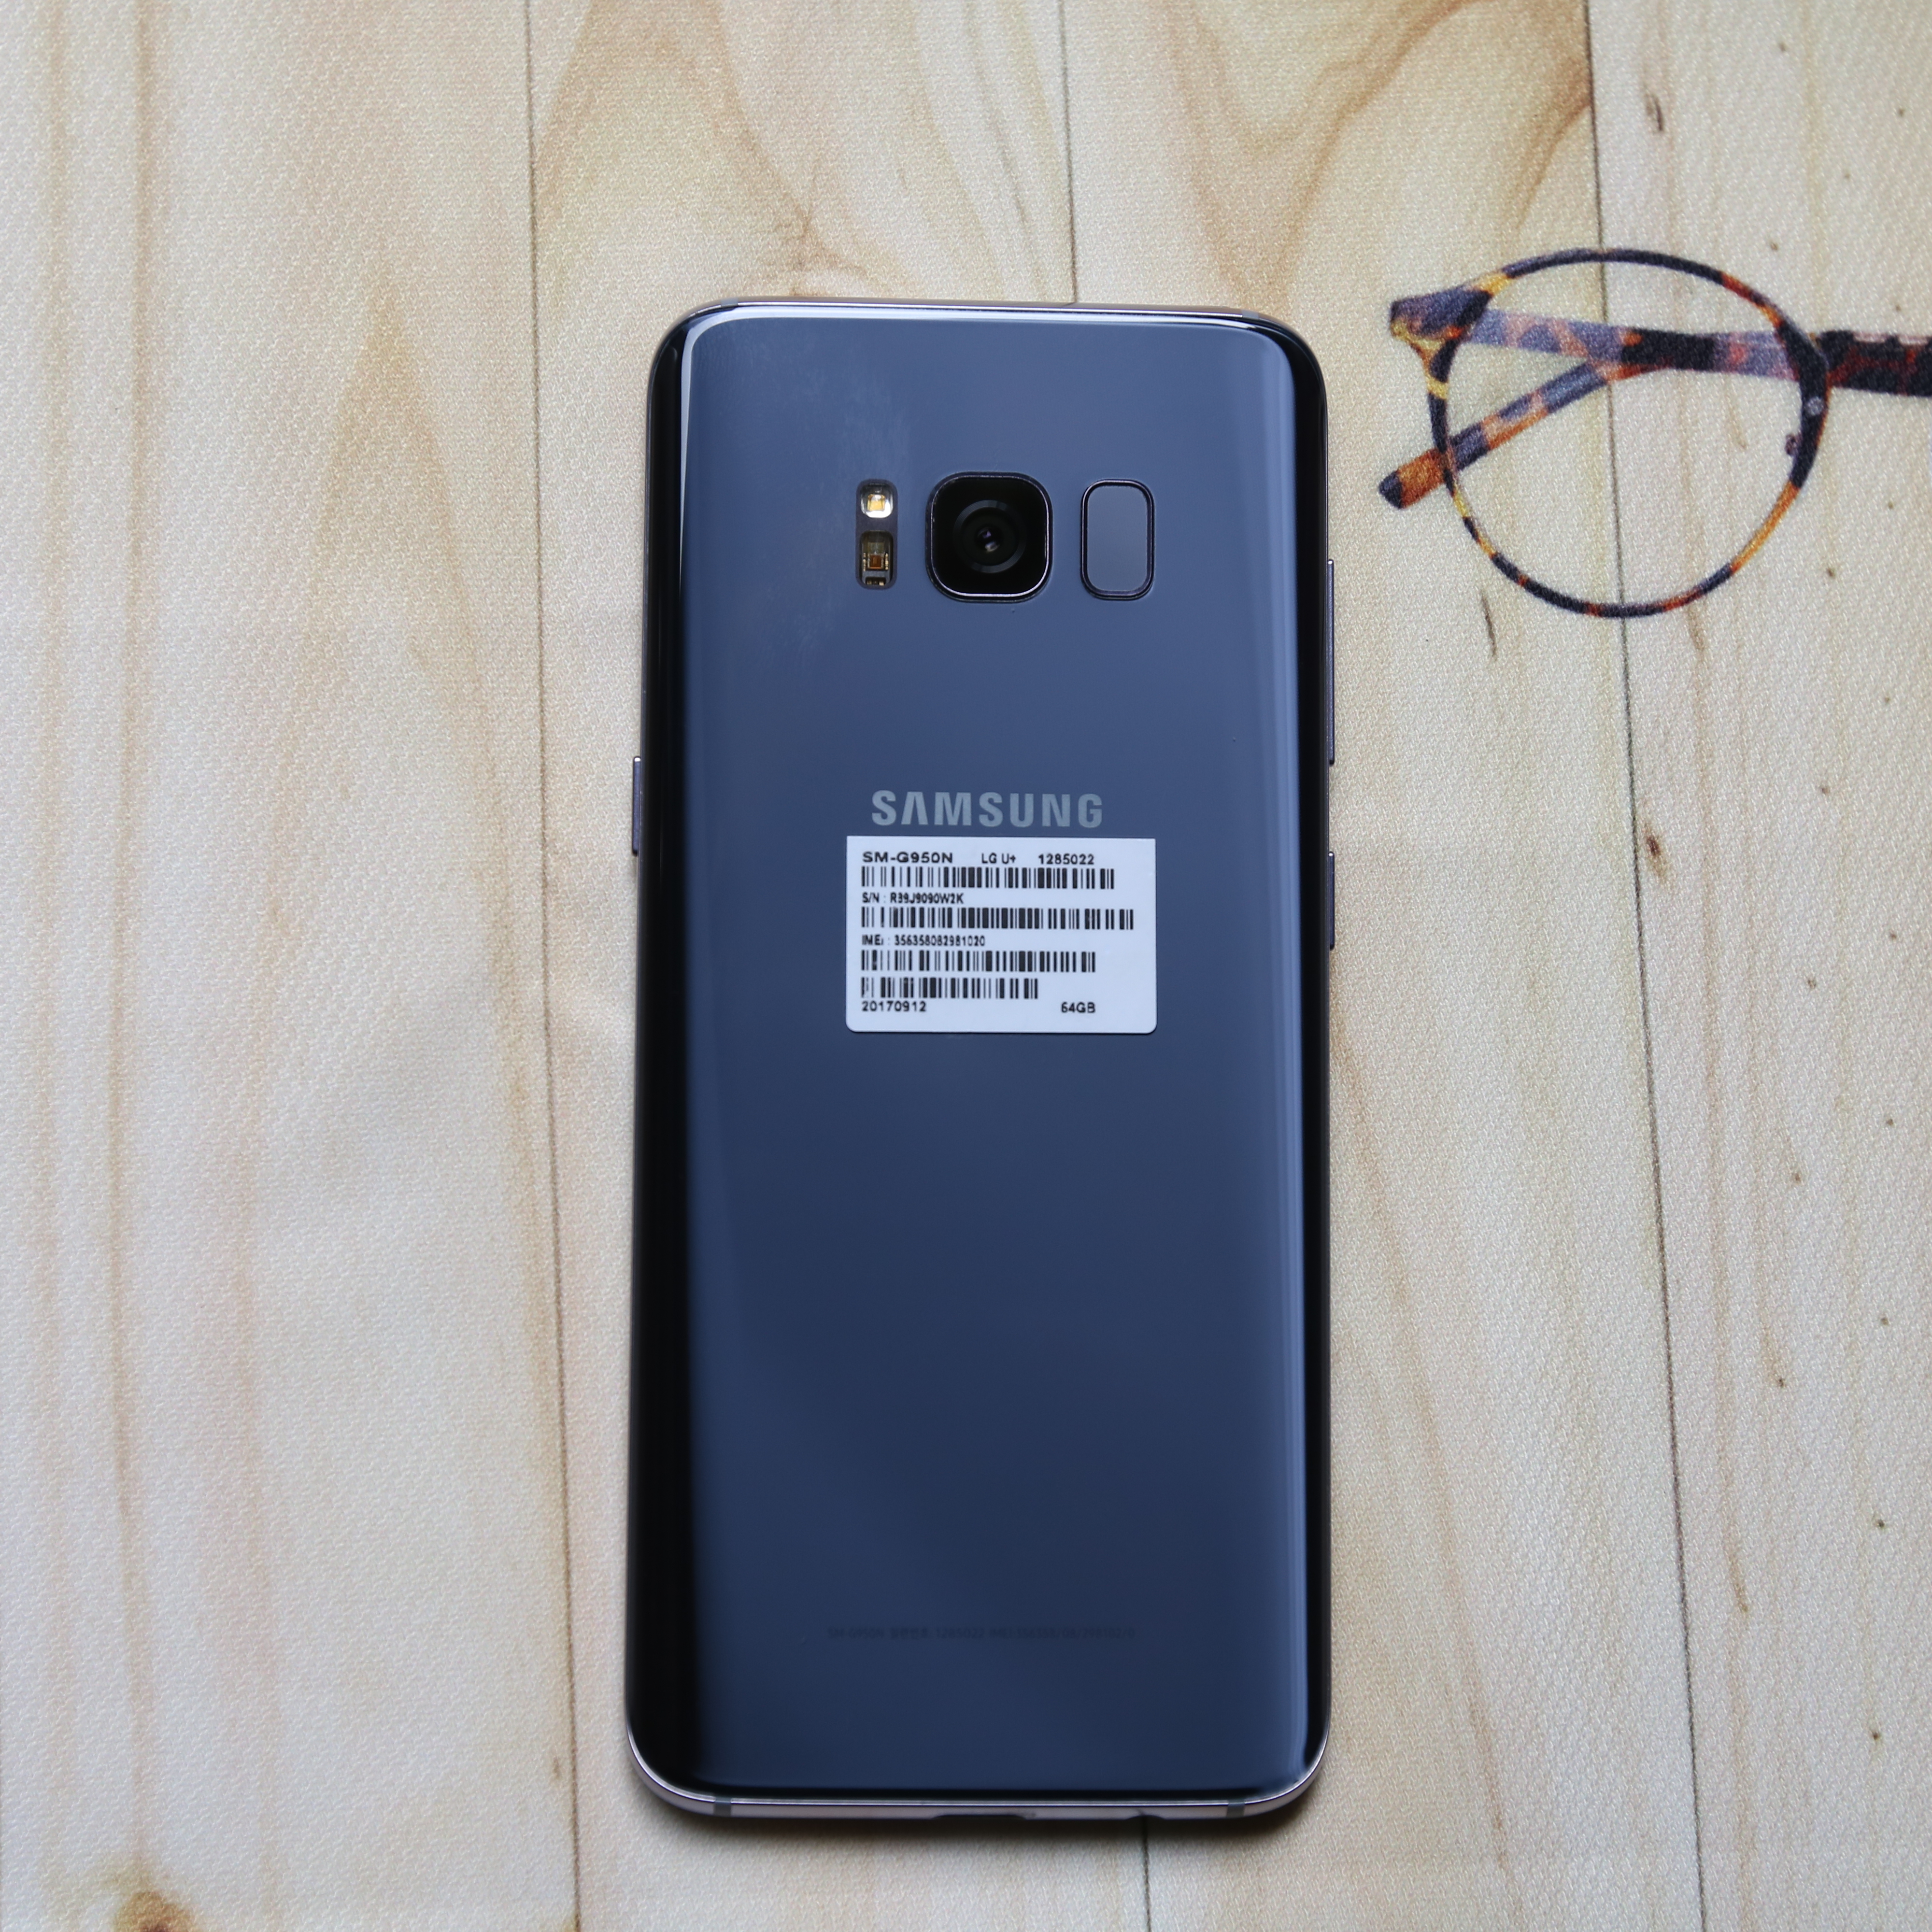 Samsung Galaxy S8 64GB cũ Hải Phòng giá 5500K